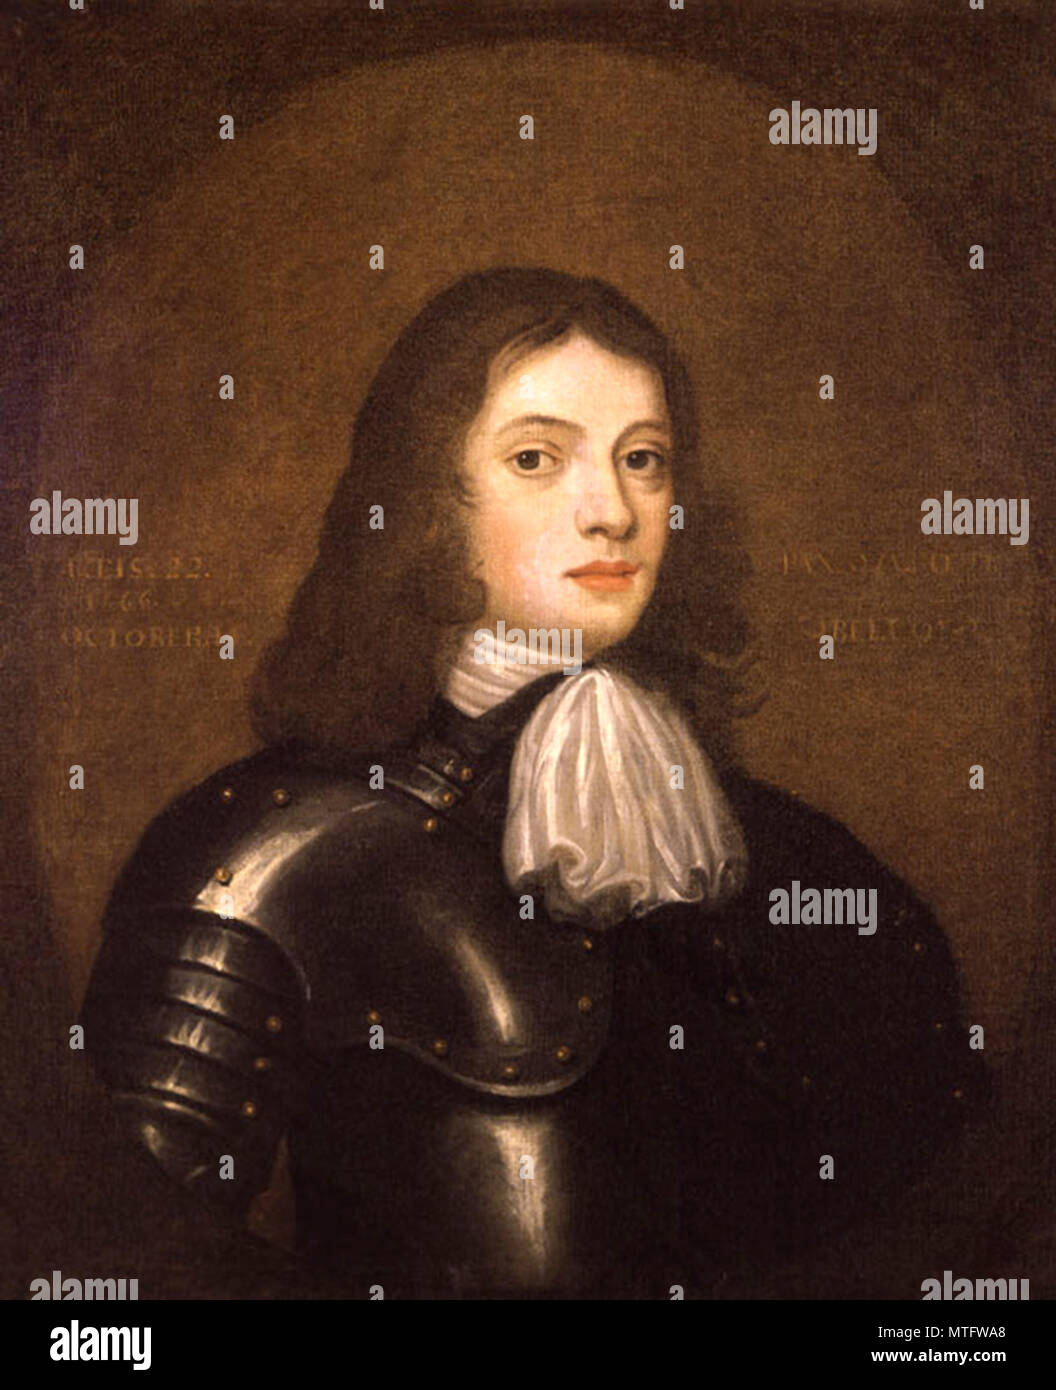 William Penn (1644 - 1718), figlio di Sir William Penn, inglese immobiliare di imprenditore, filosofo, inizio Quaker e fondatore dell'inglese North American Colony Provincia di Pennsylvania Foto Stock